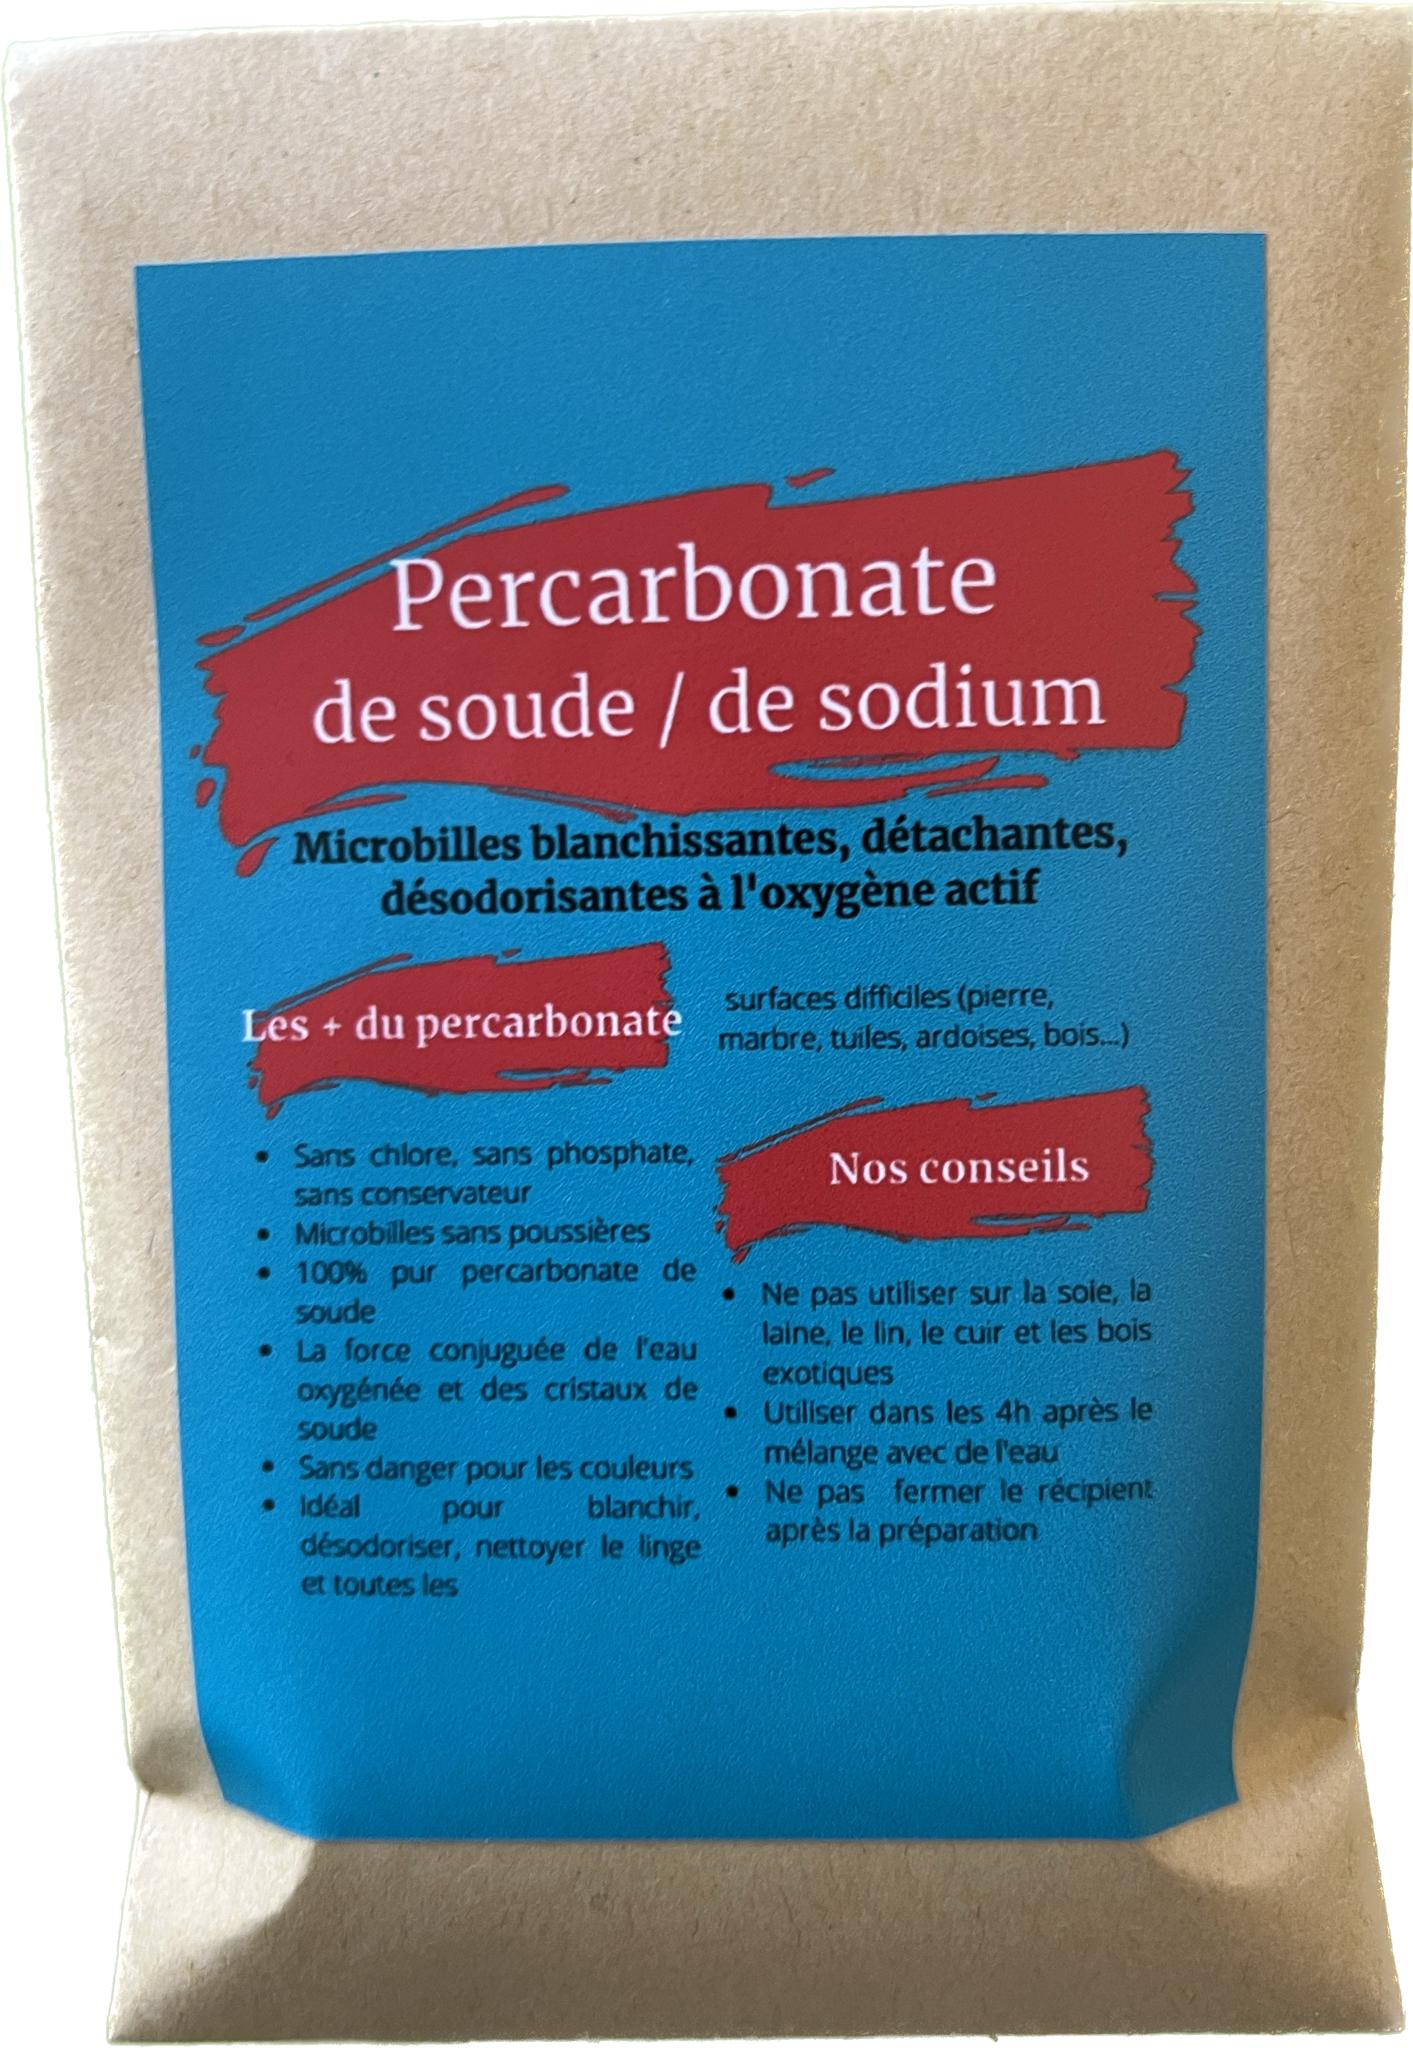 Percarbonate de soude - Rañute